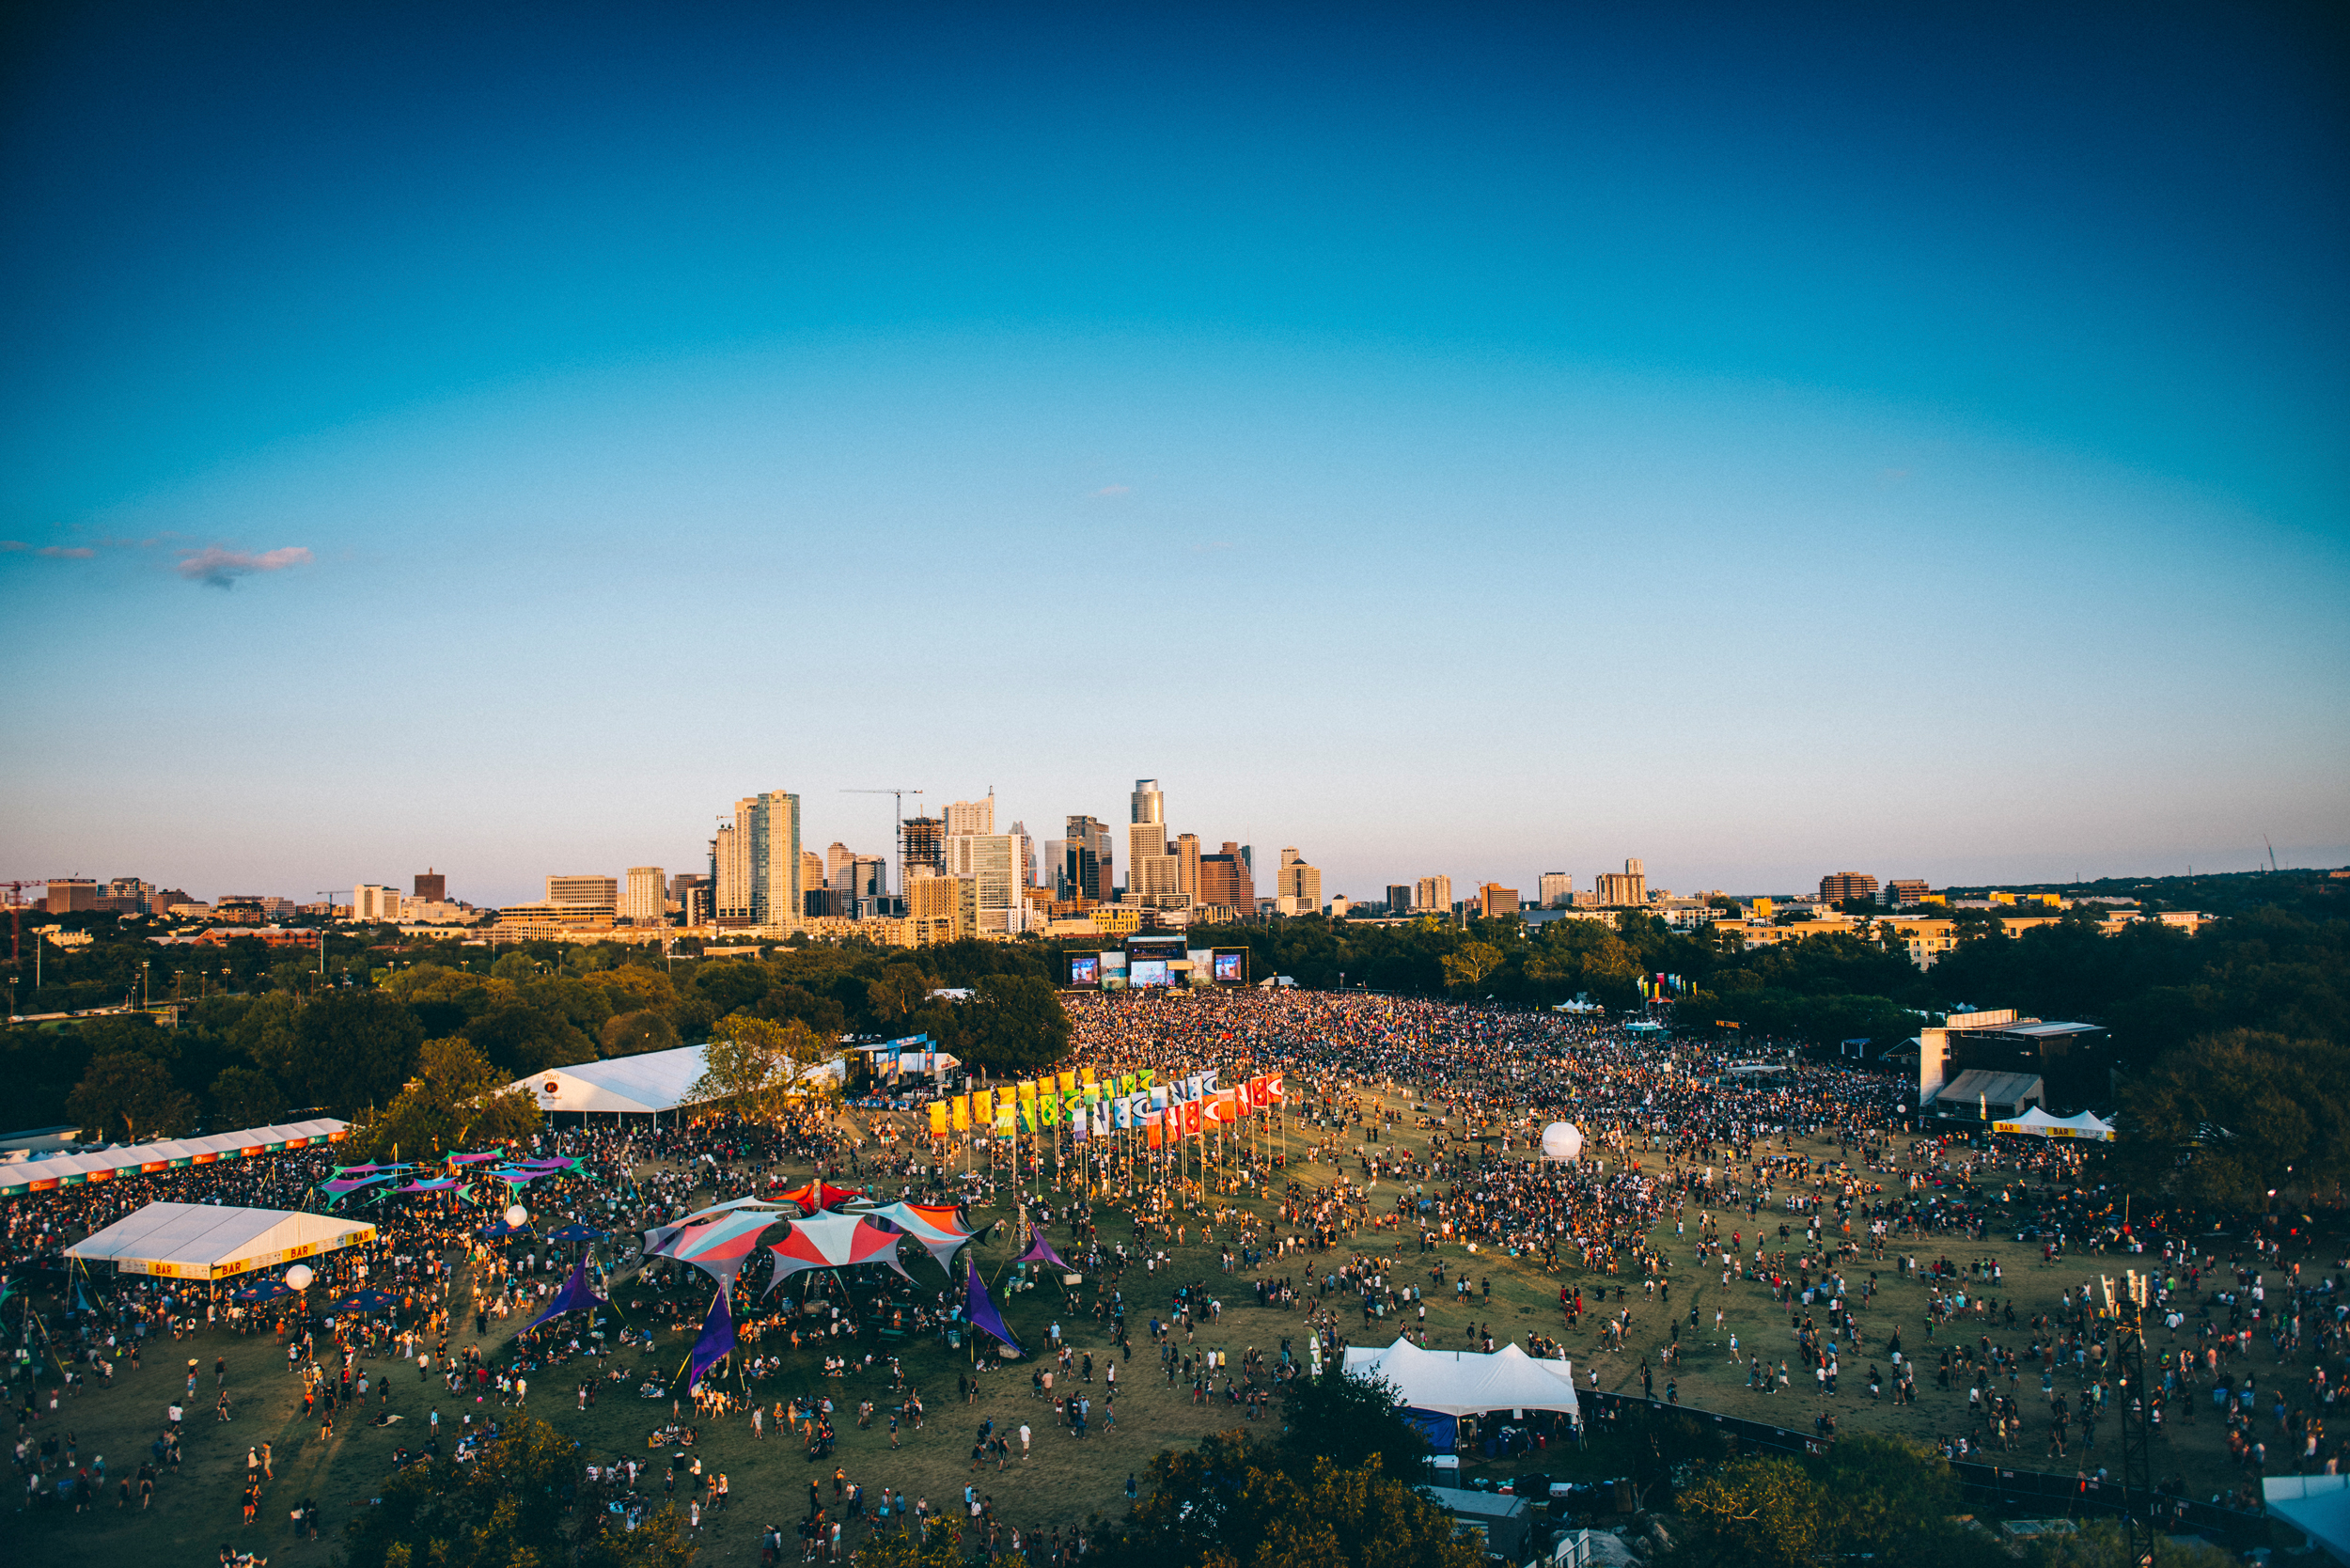 2019 Austin City Limits Music Festival Lineup